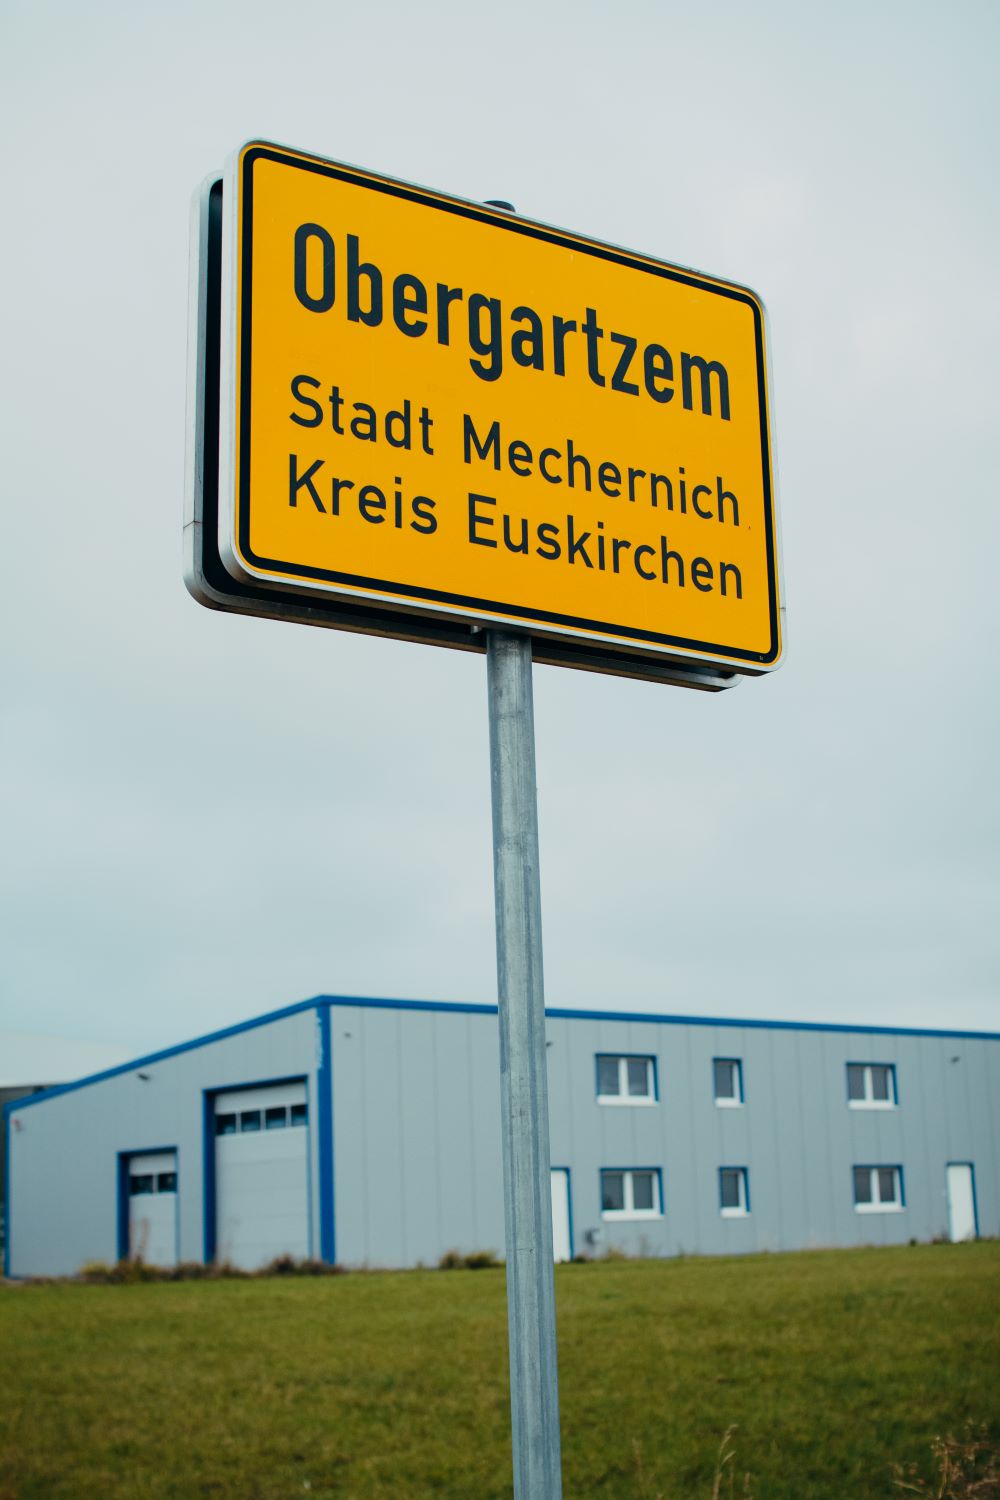 Ortsschild Obergartzem, Stadt Mechernich, Kreis Euskirchen